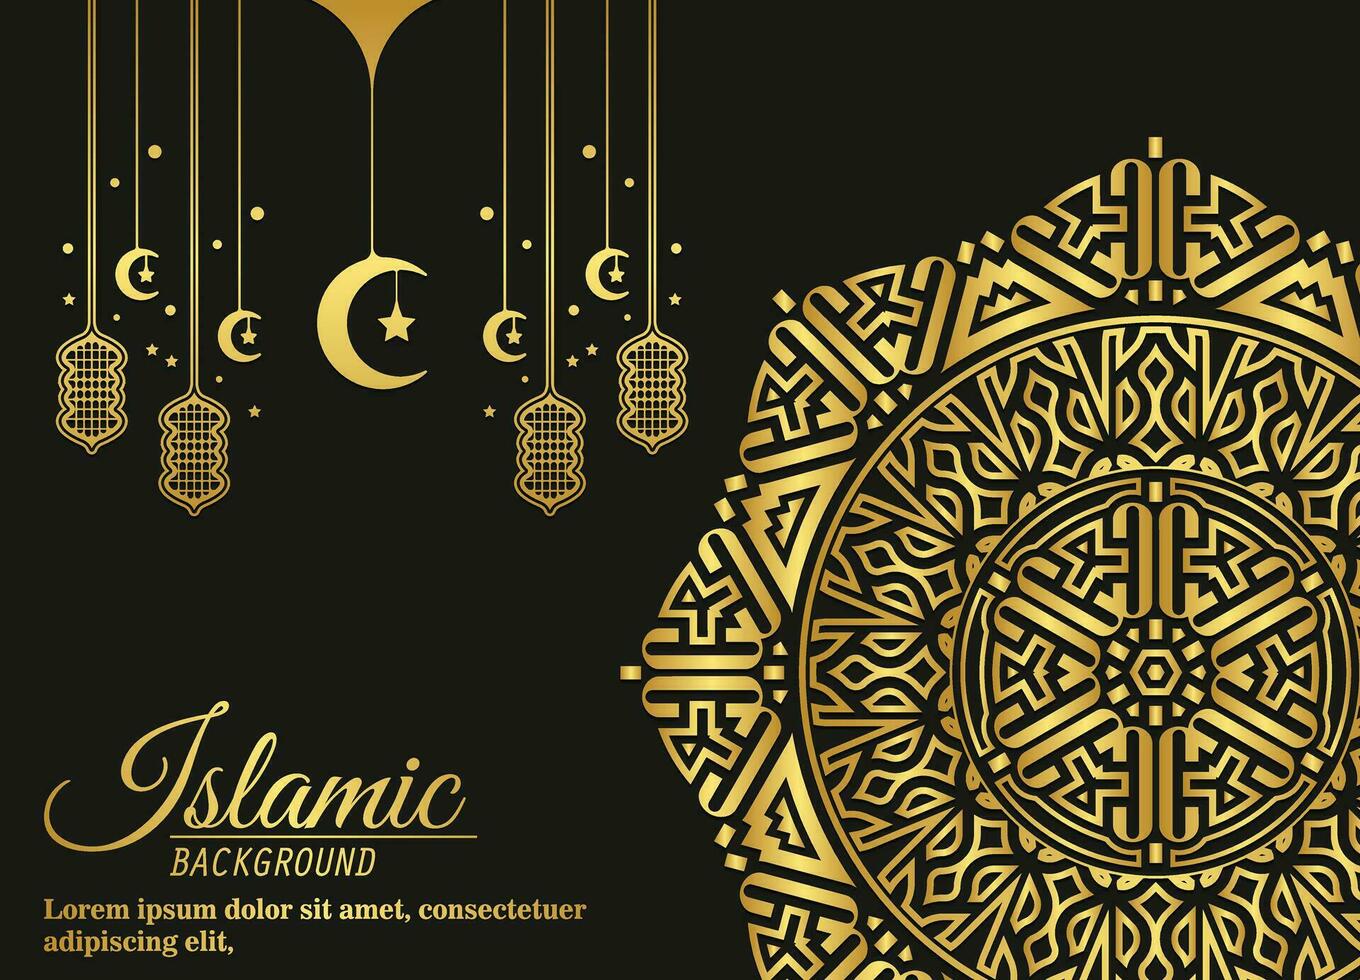 fond de mandala de luxe avec motif oriental islamique arabe arabesque vecteur